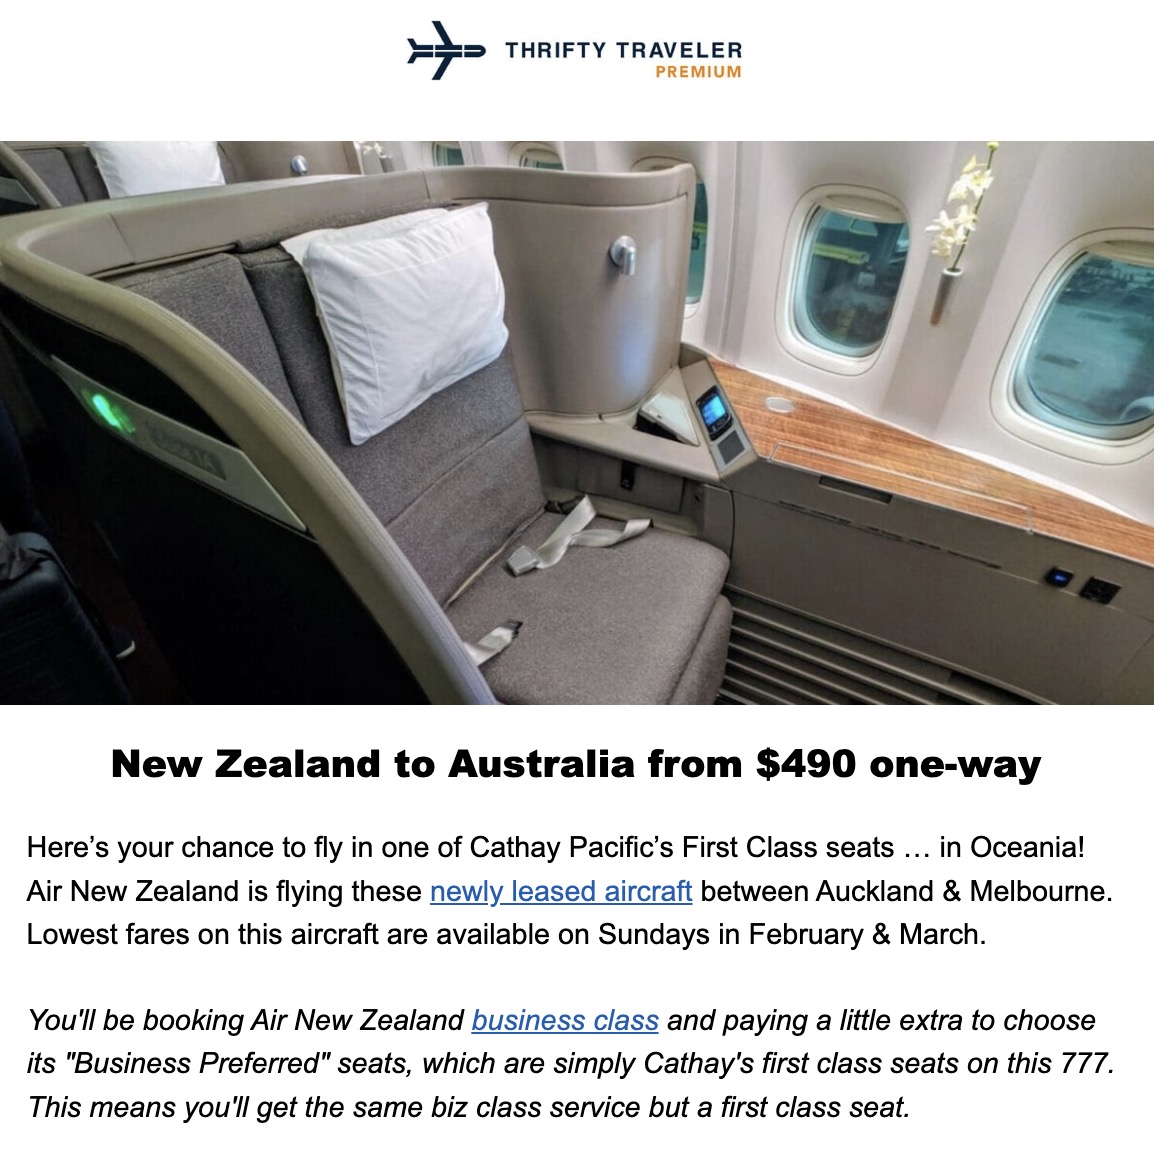 Air New Zealand first class